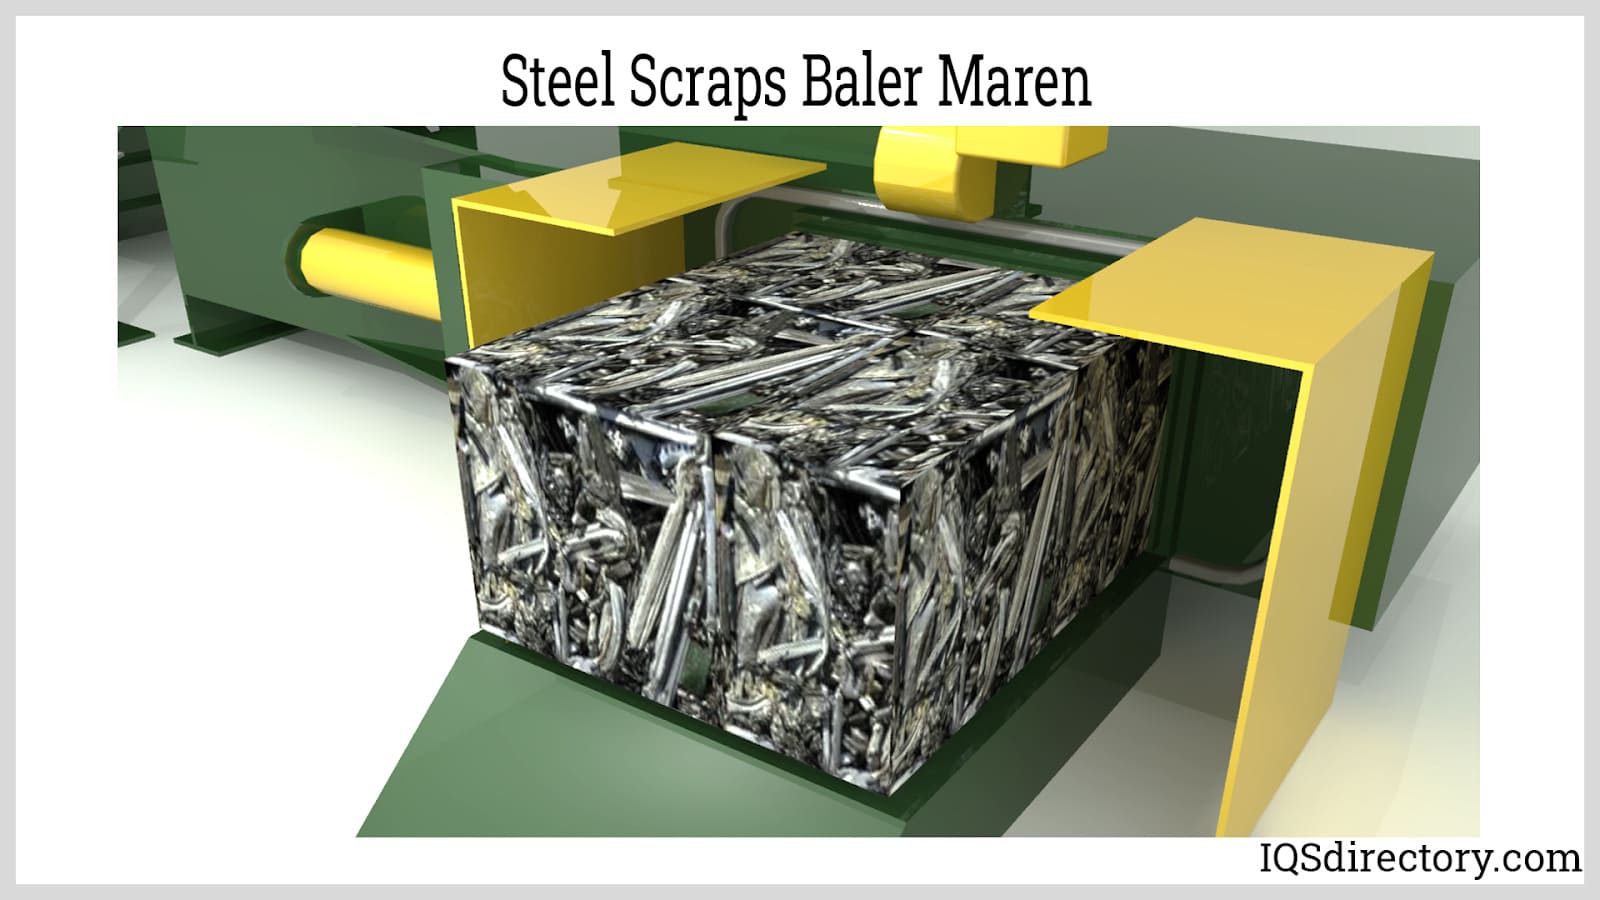 Steel Scraps Baler